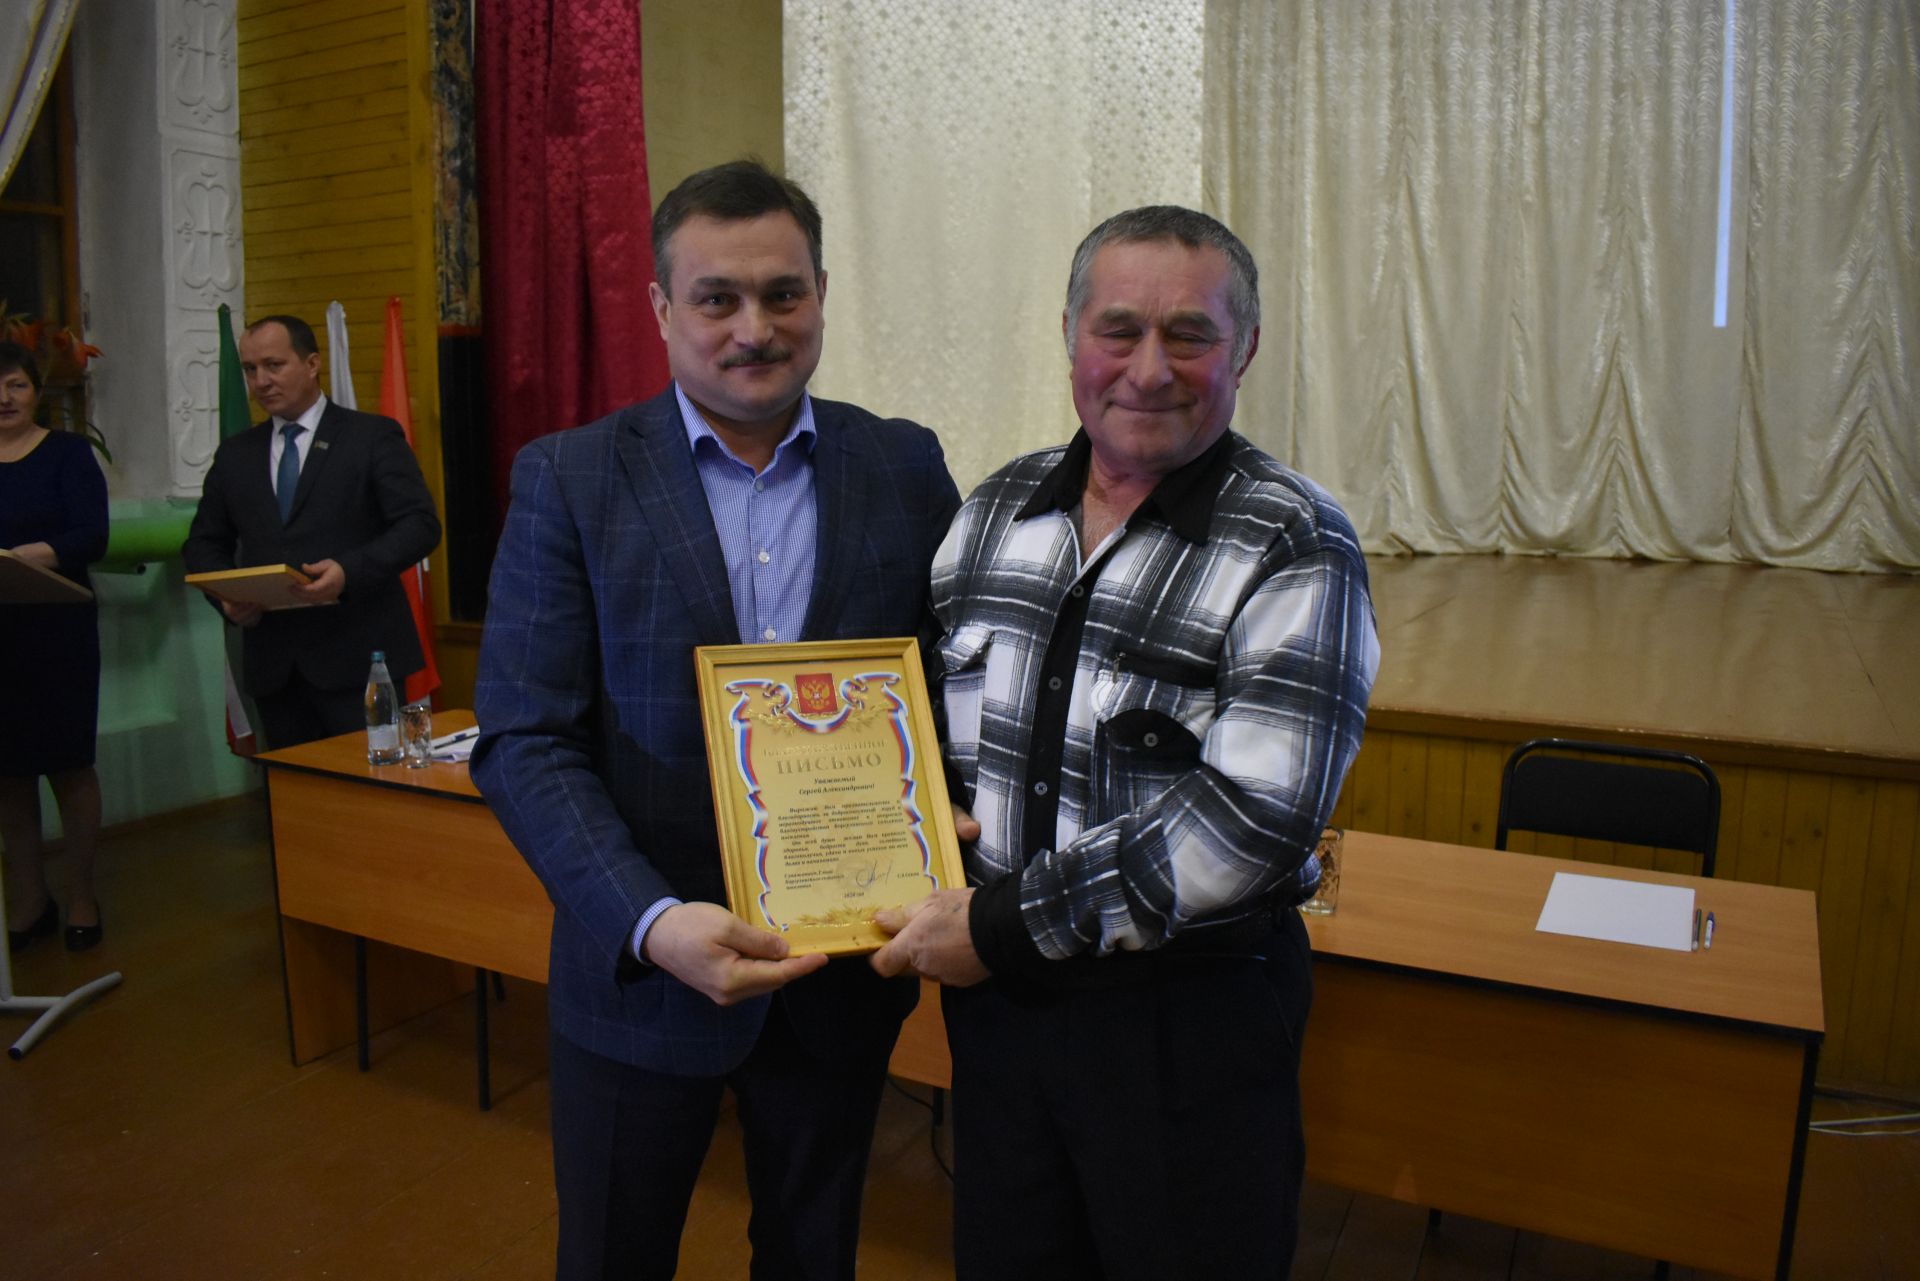 Глава района Марат Зиатдинов рекомендовал коргузинцам брать обязательства, которые реально можно выполнить